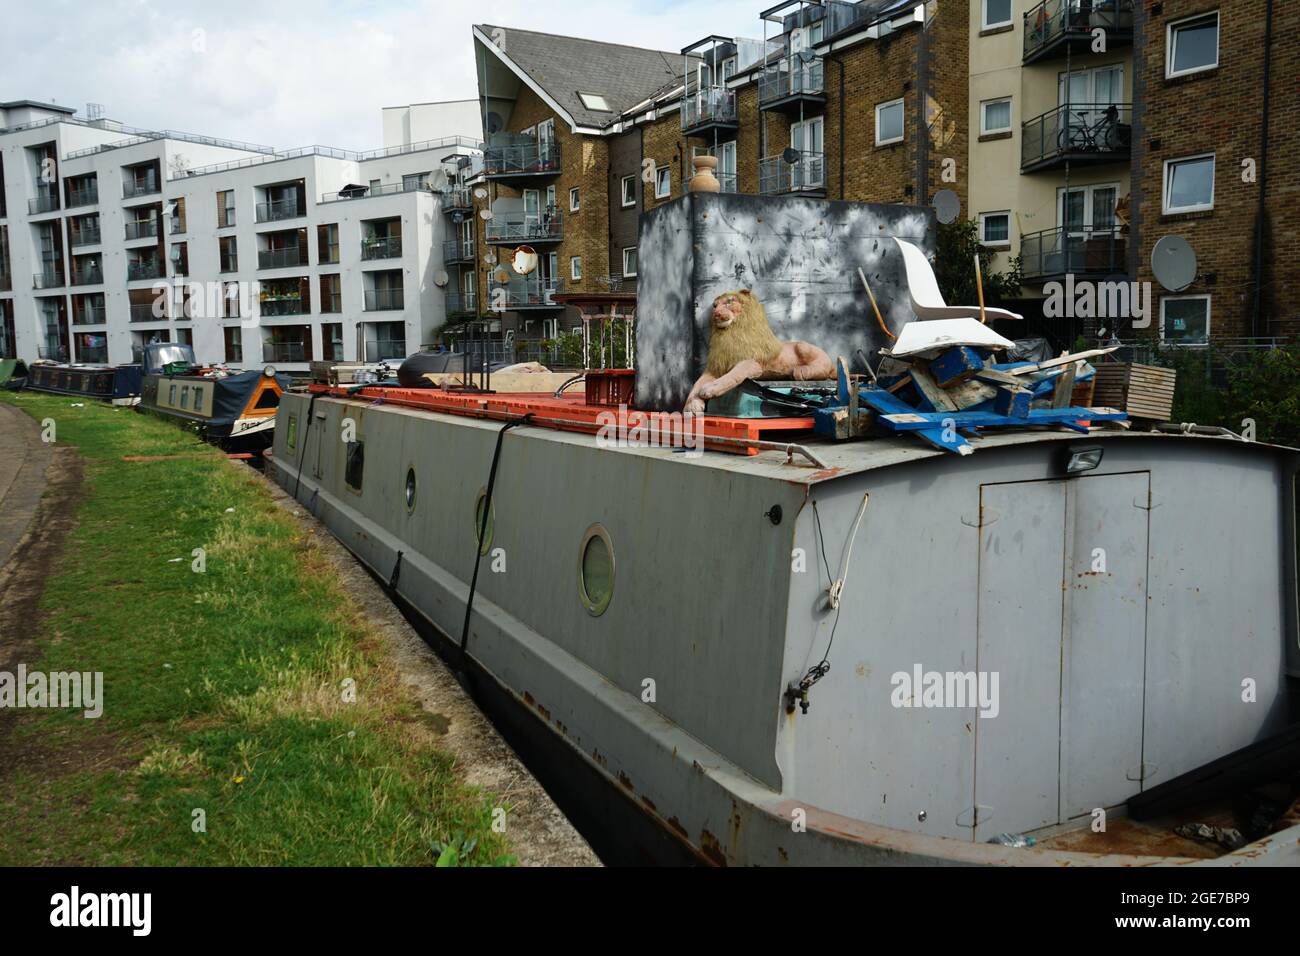 Bateaux sur le canal de Little Venice, de Warwick Ave à Ladbroke Grove, à Londres Angleterre, U.K Banque D'Images